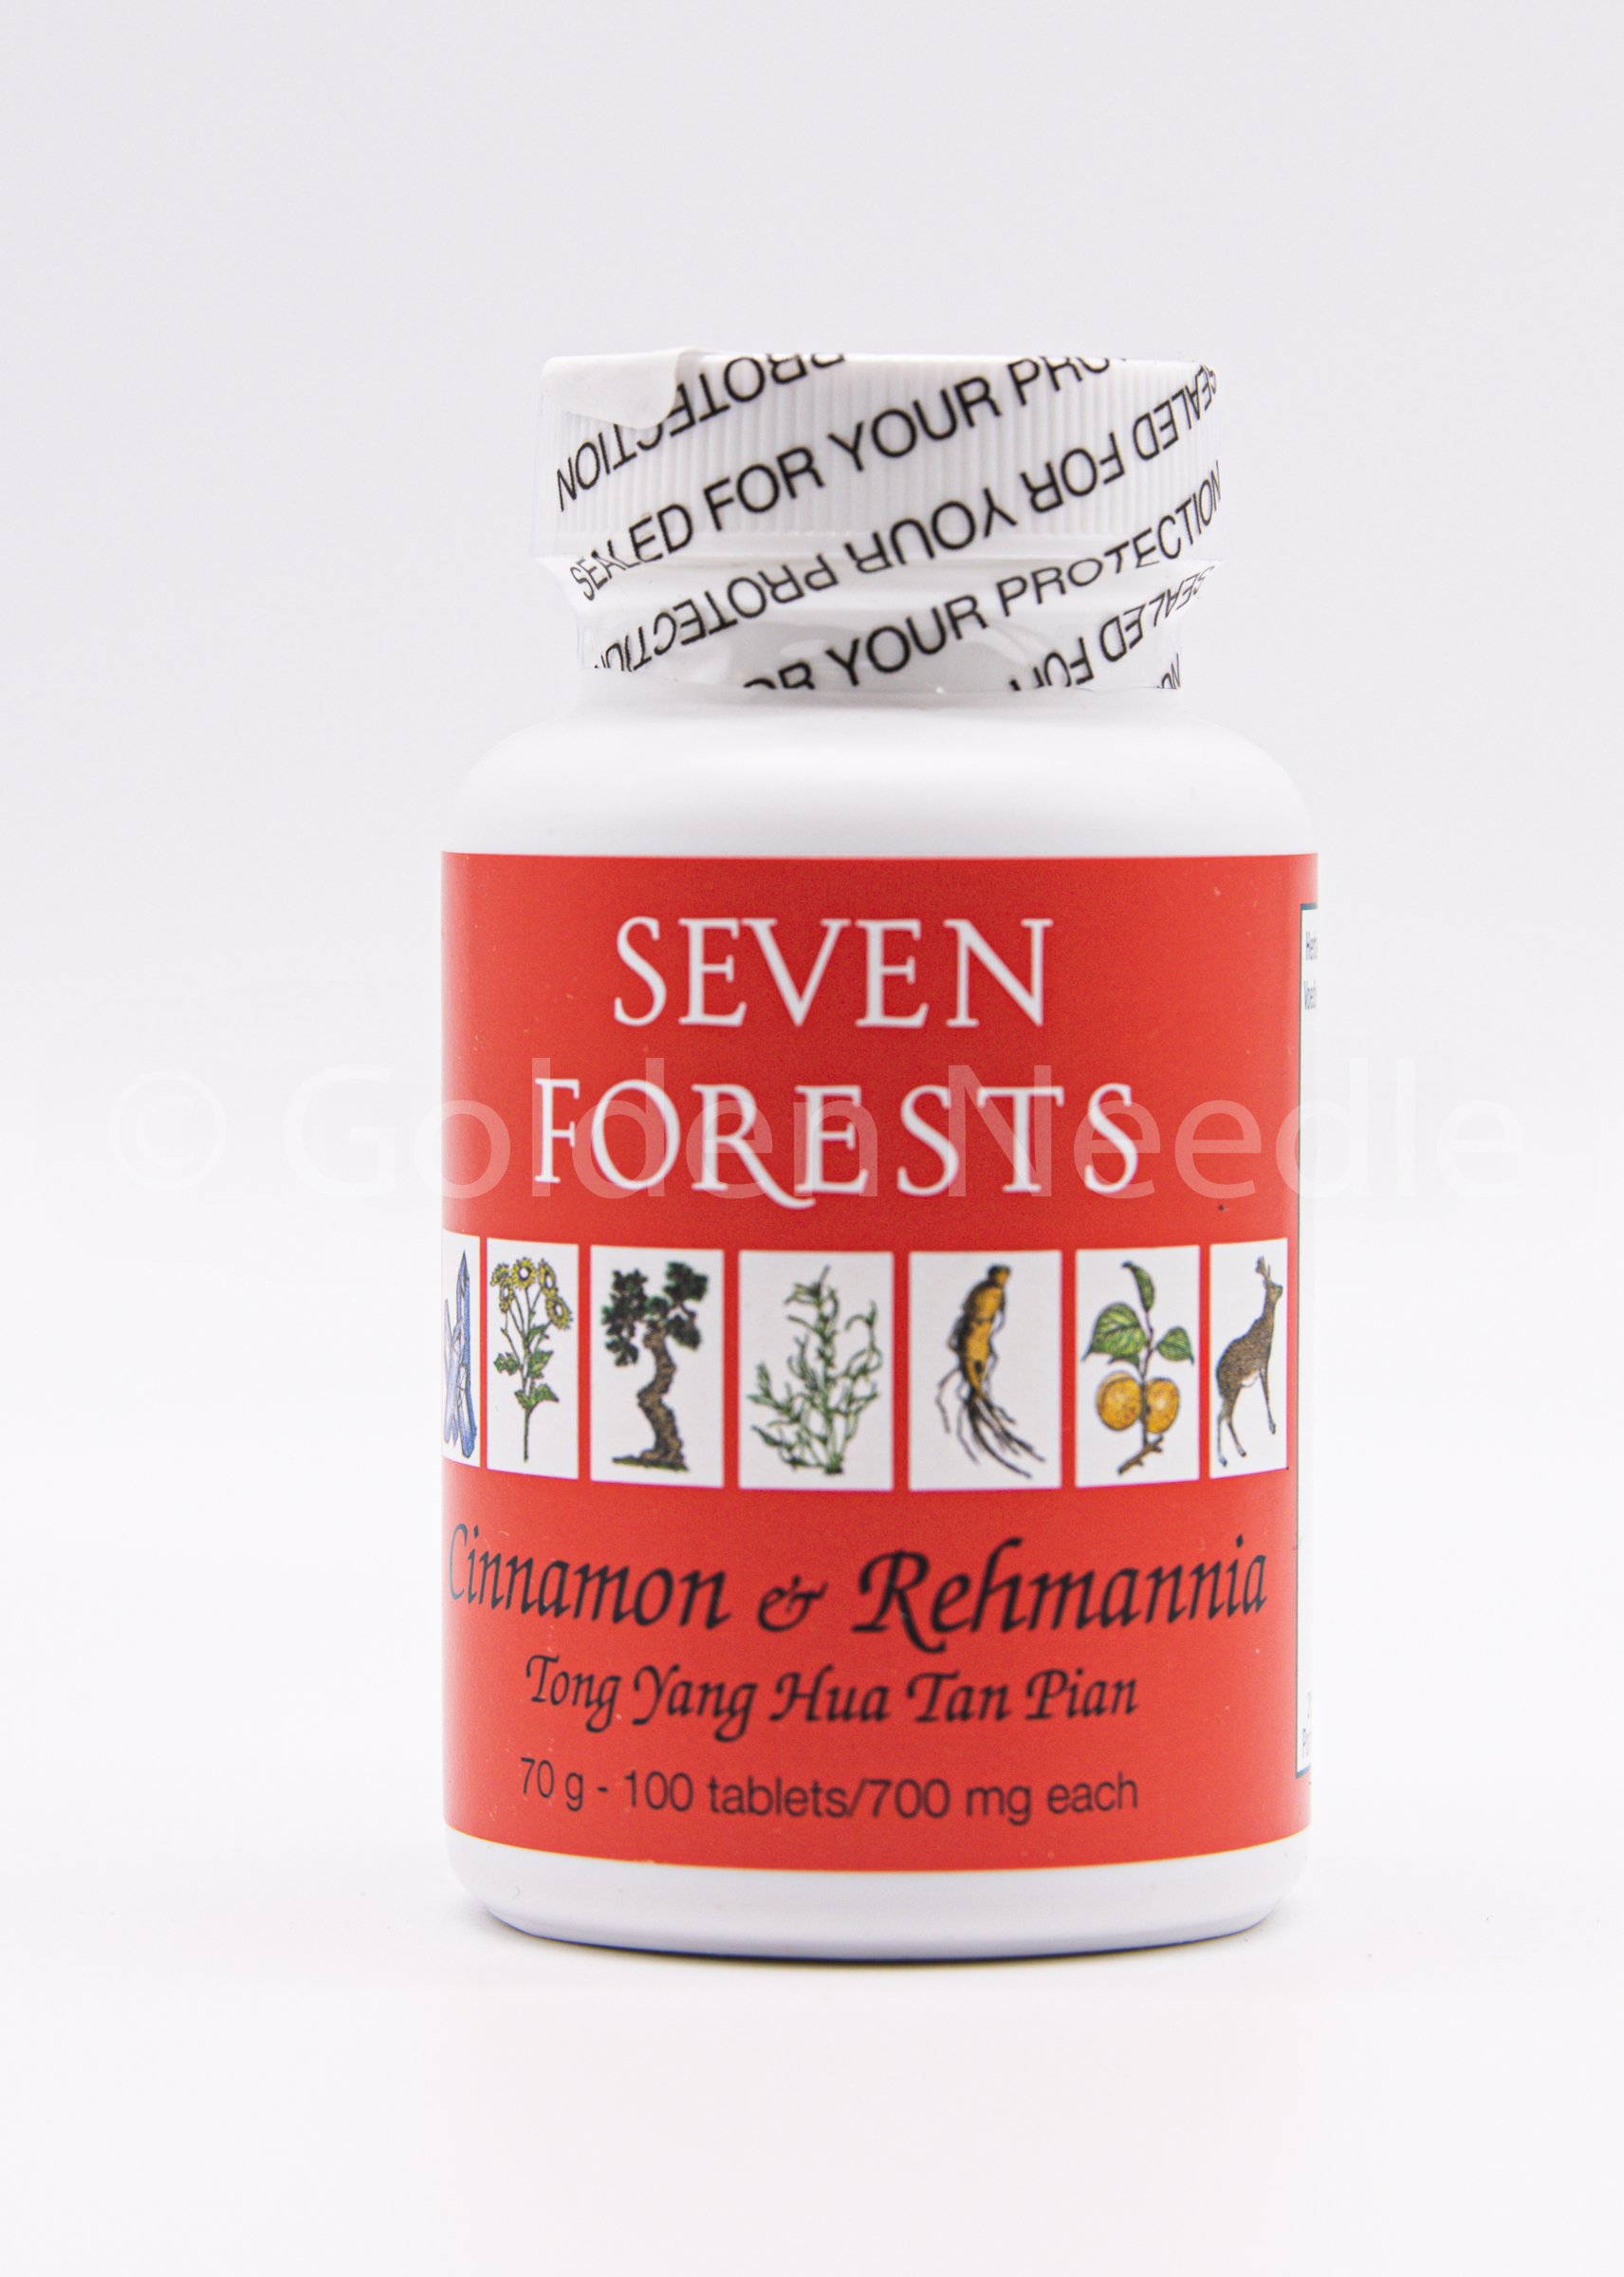 Cinnamon/Rehmannia